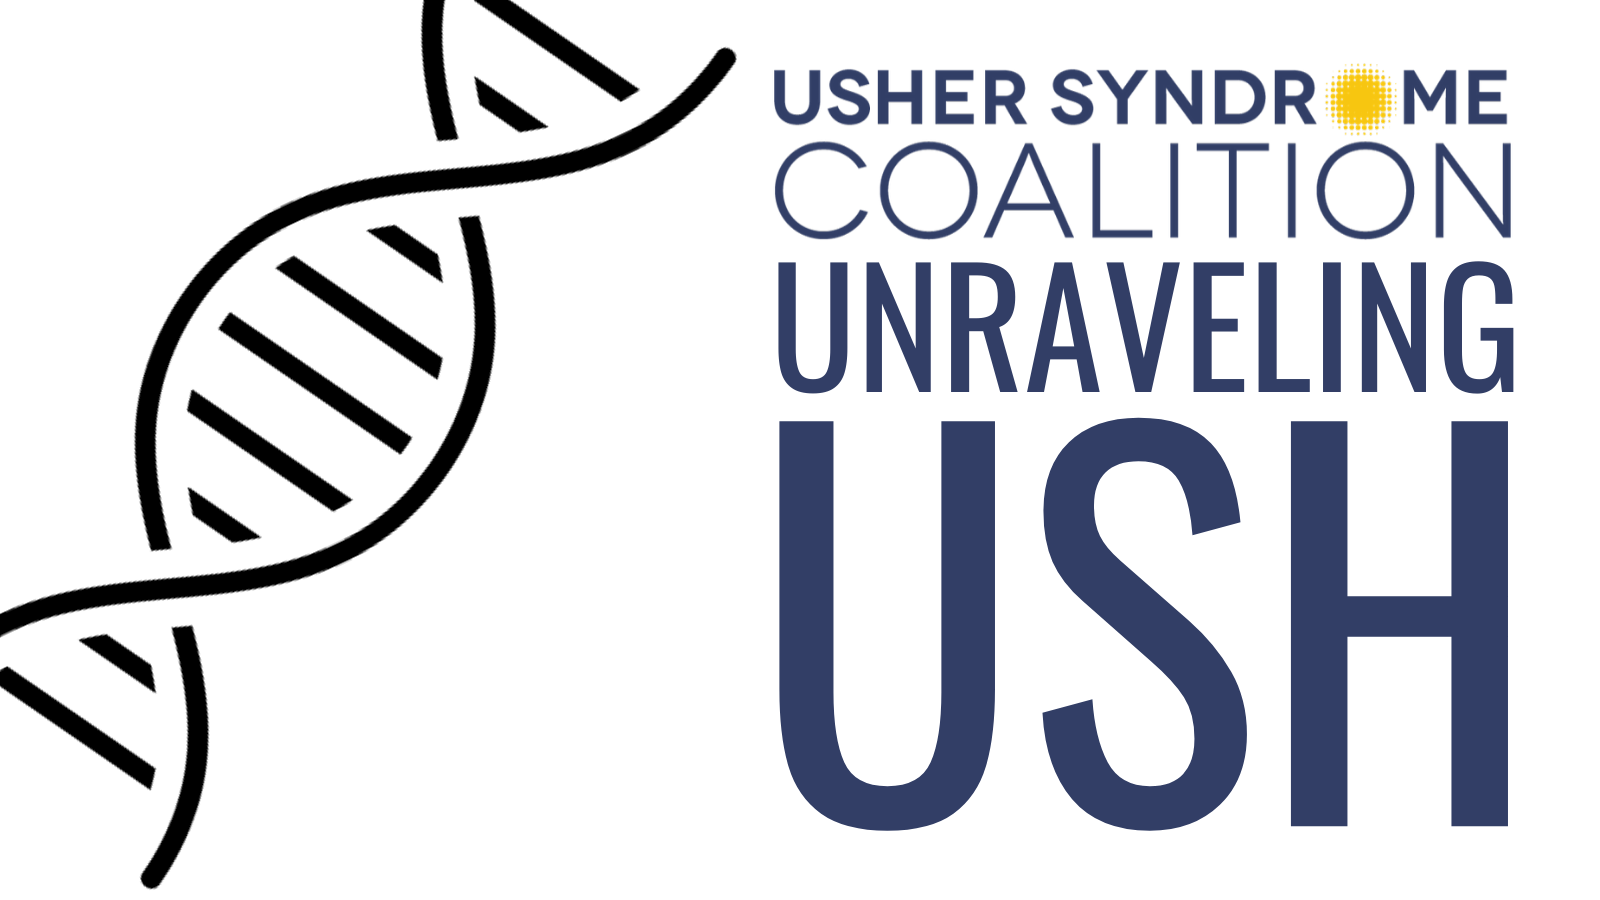 usher syndrome coalition